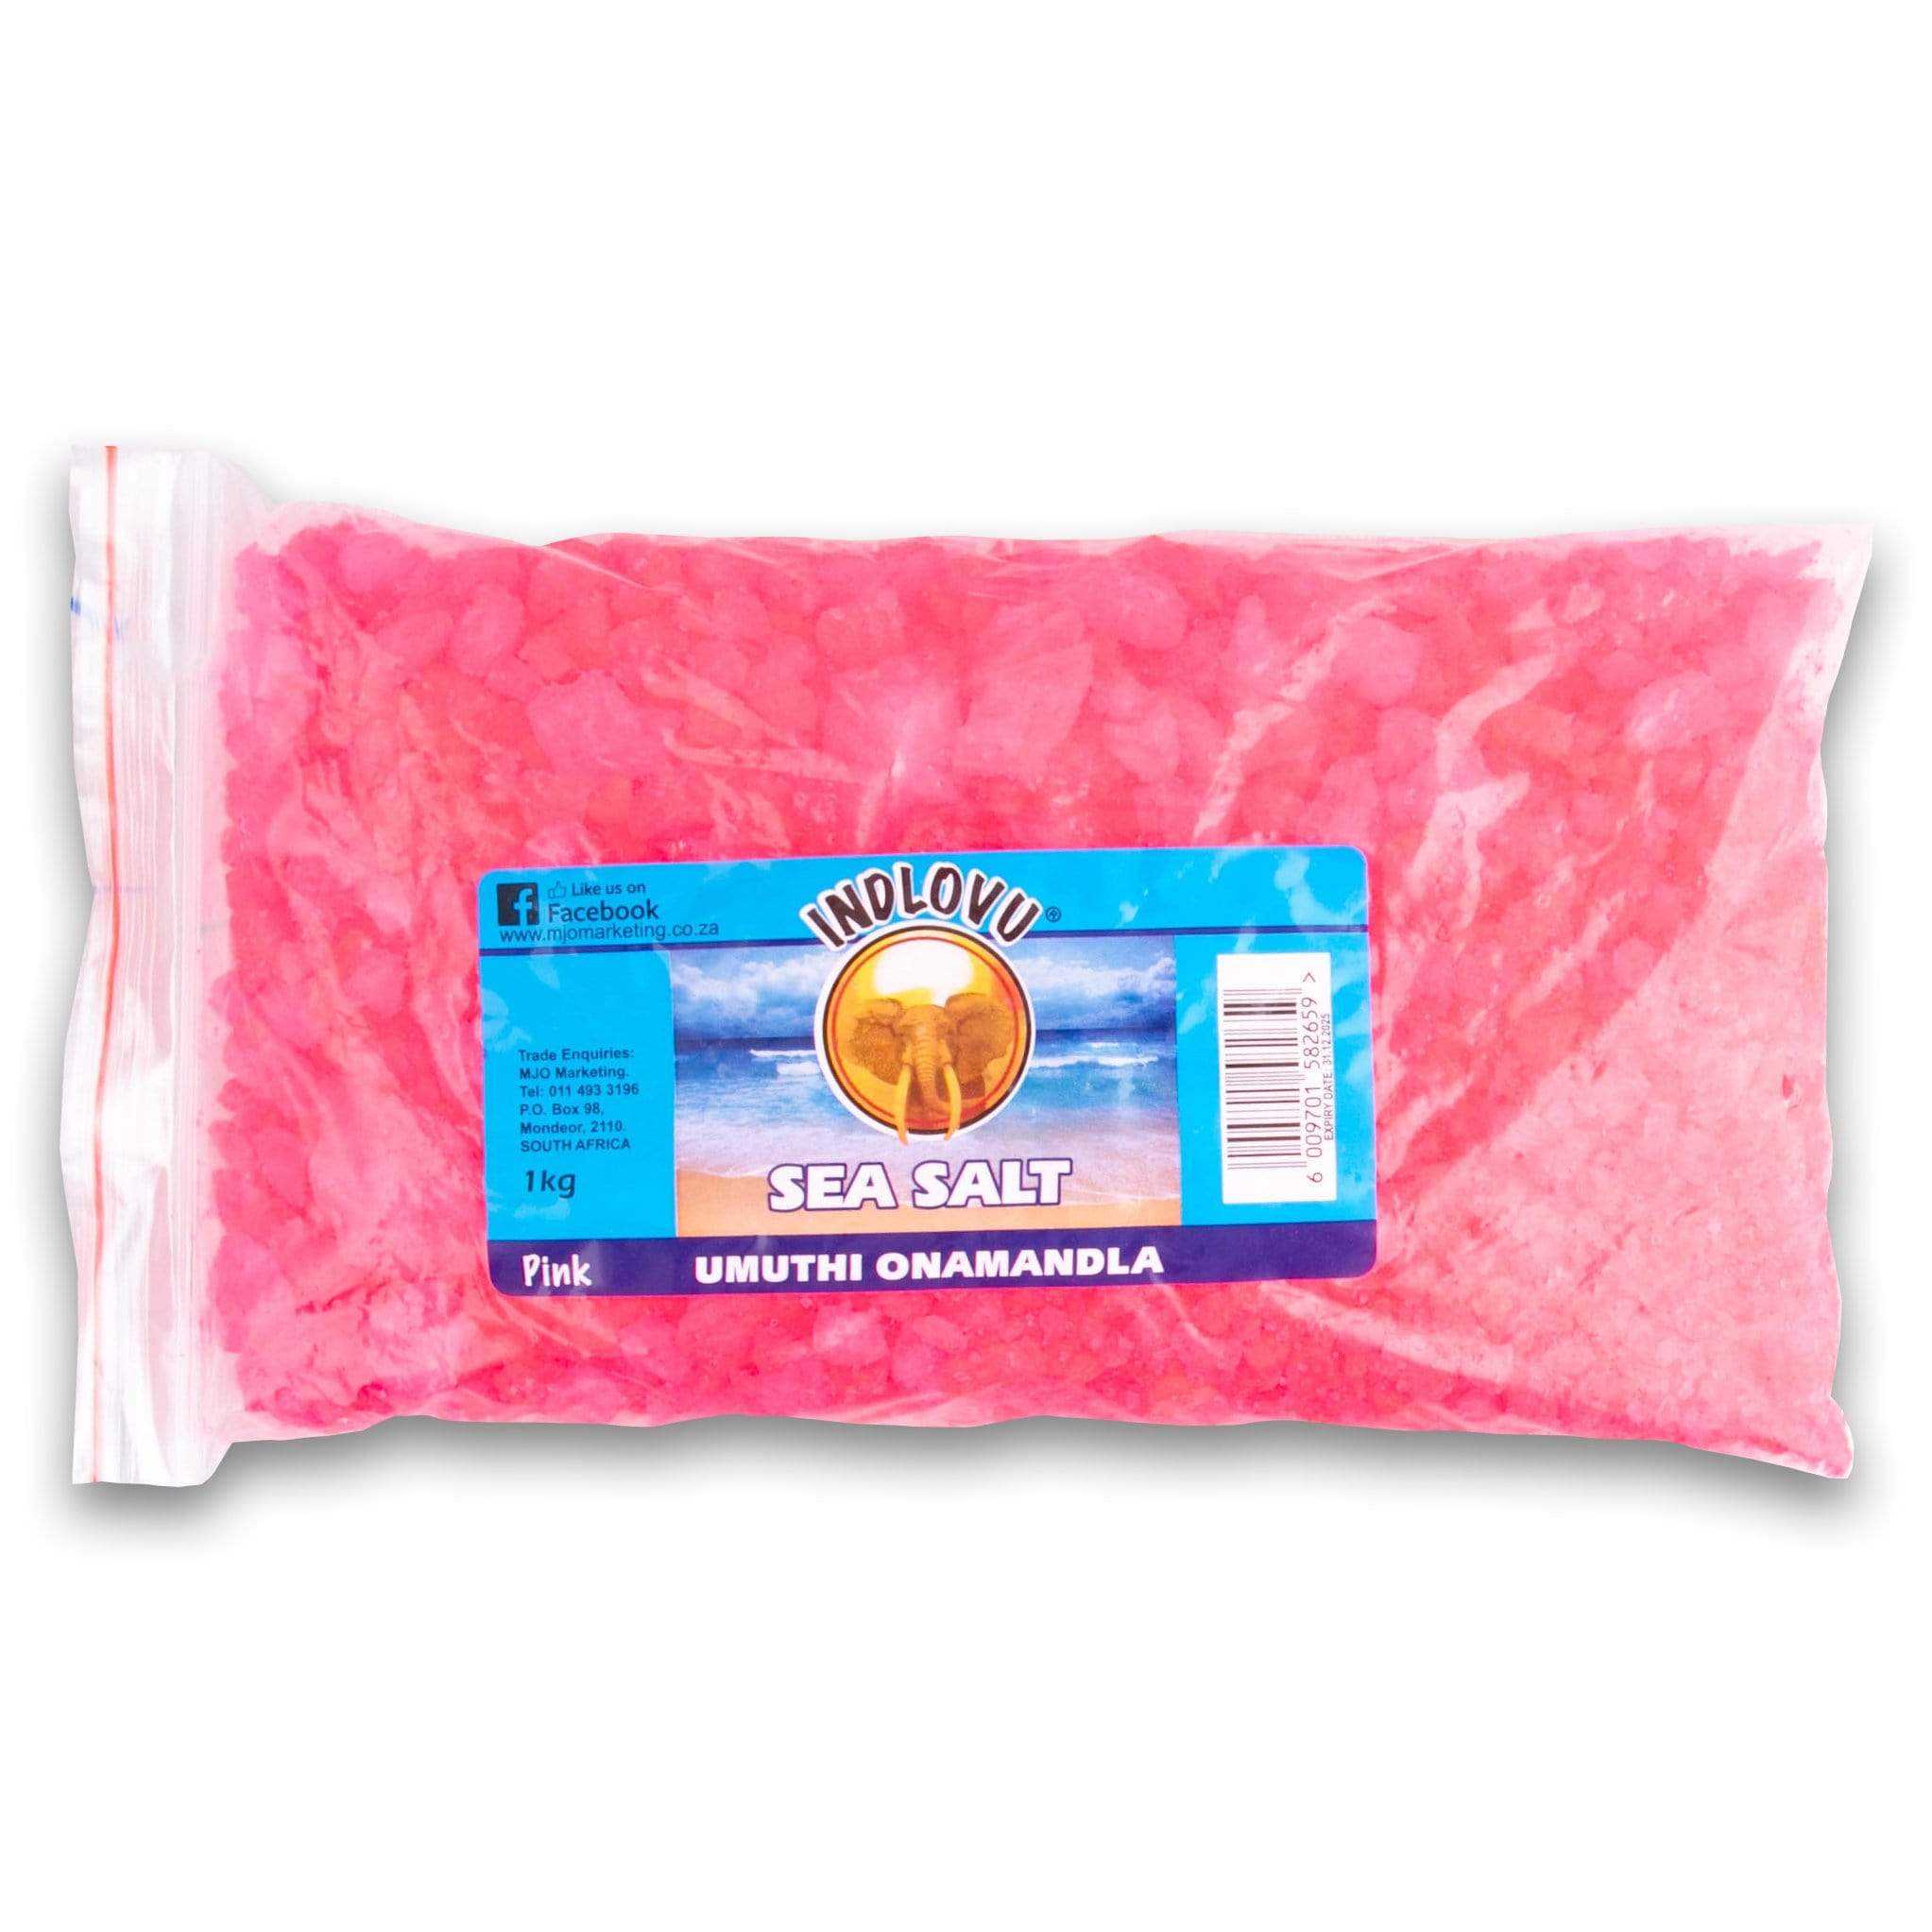 Indlovu Sea Salt 1kg Pink 6009701582659 14128 33327417393302 ?v=1655462201